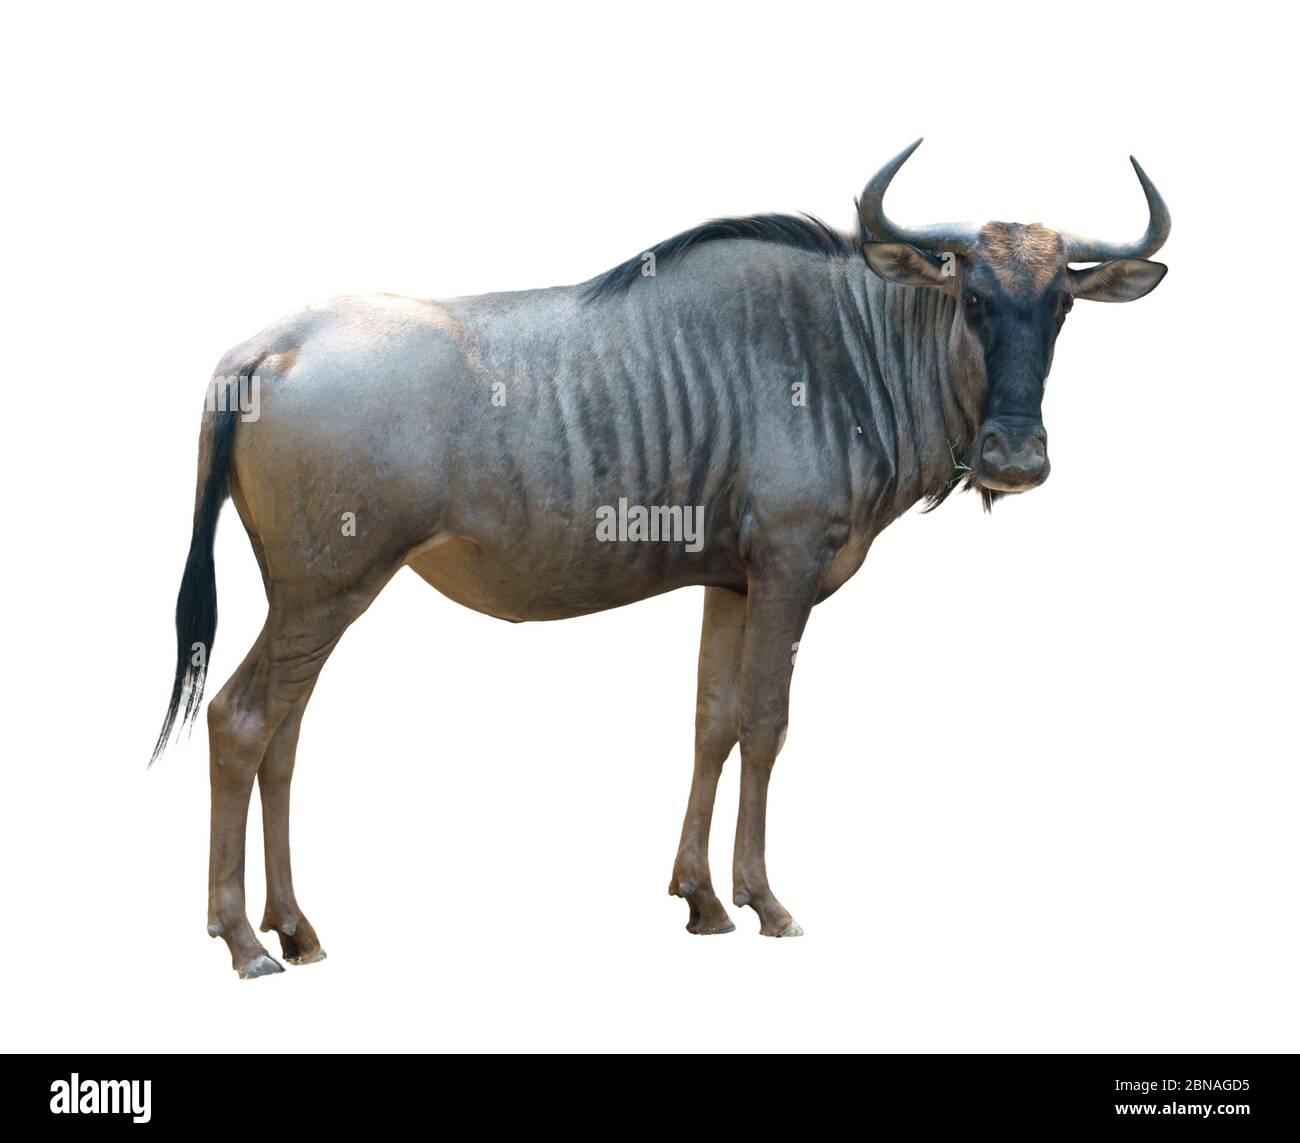 wildebeest o gnu aislado sobre fondo blanco Foto de stock